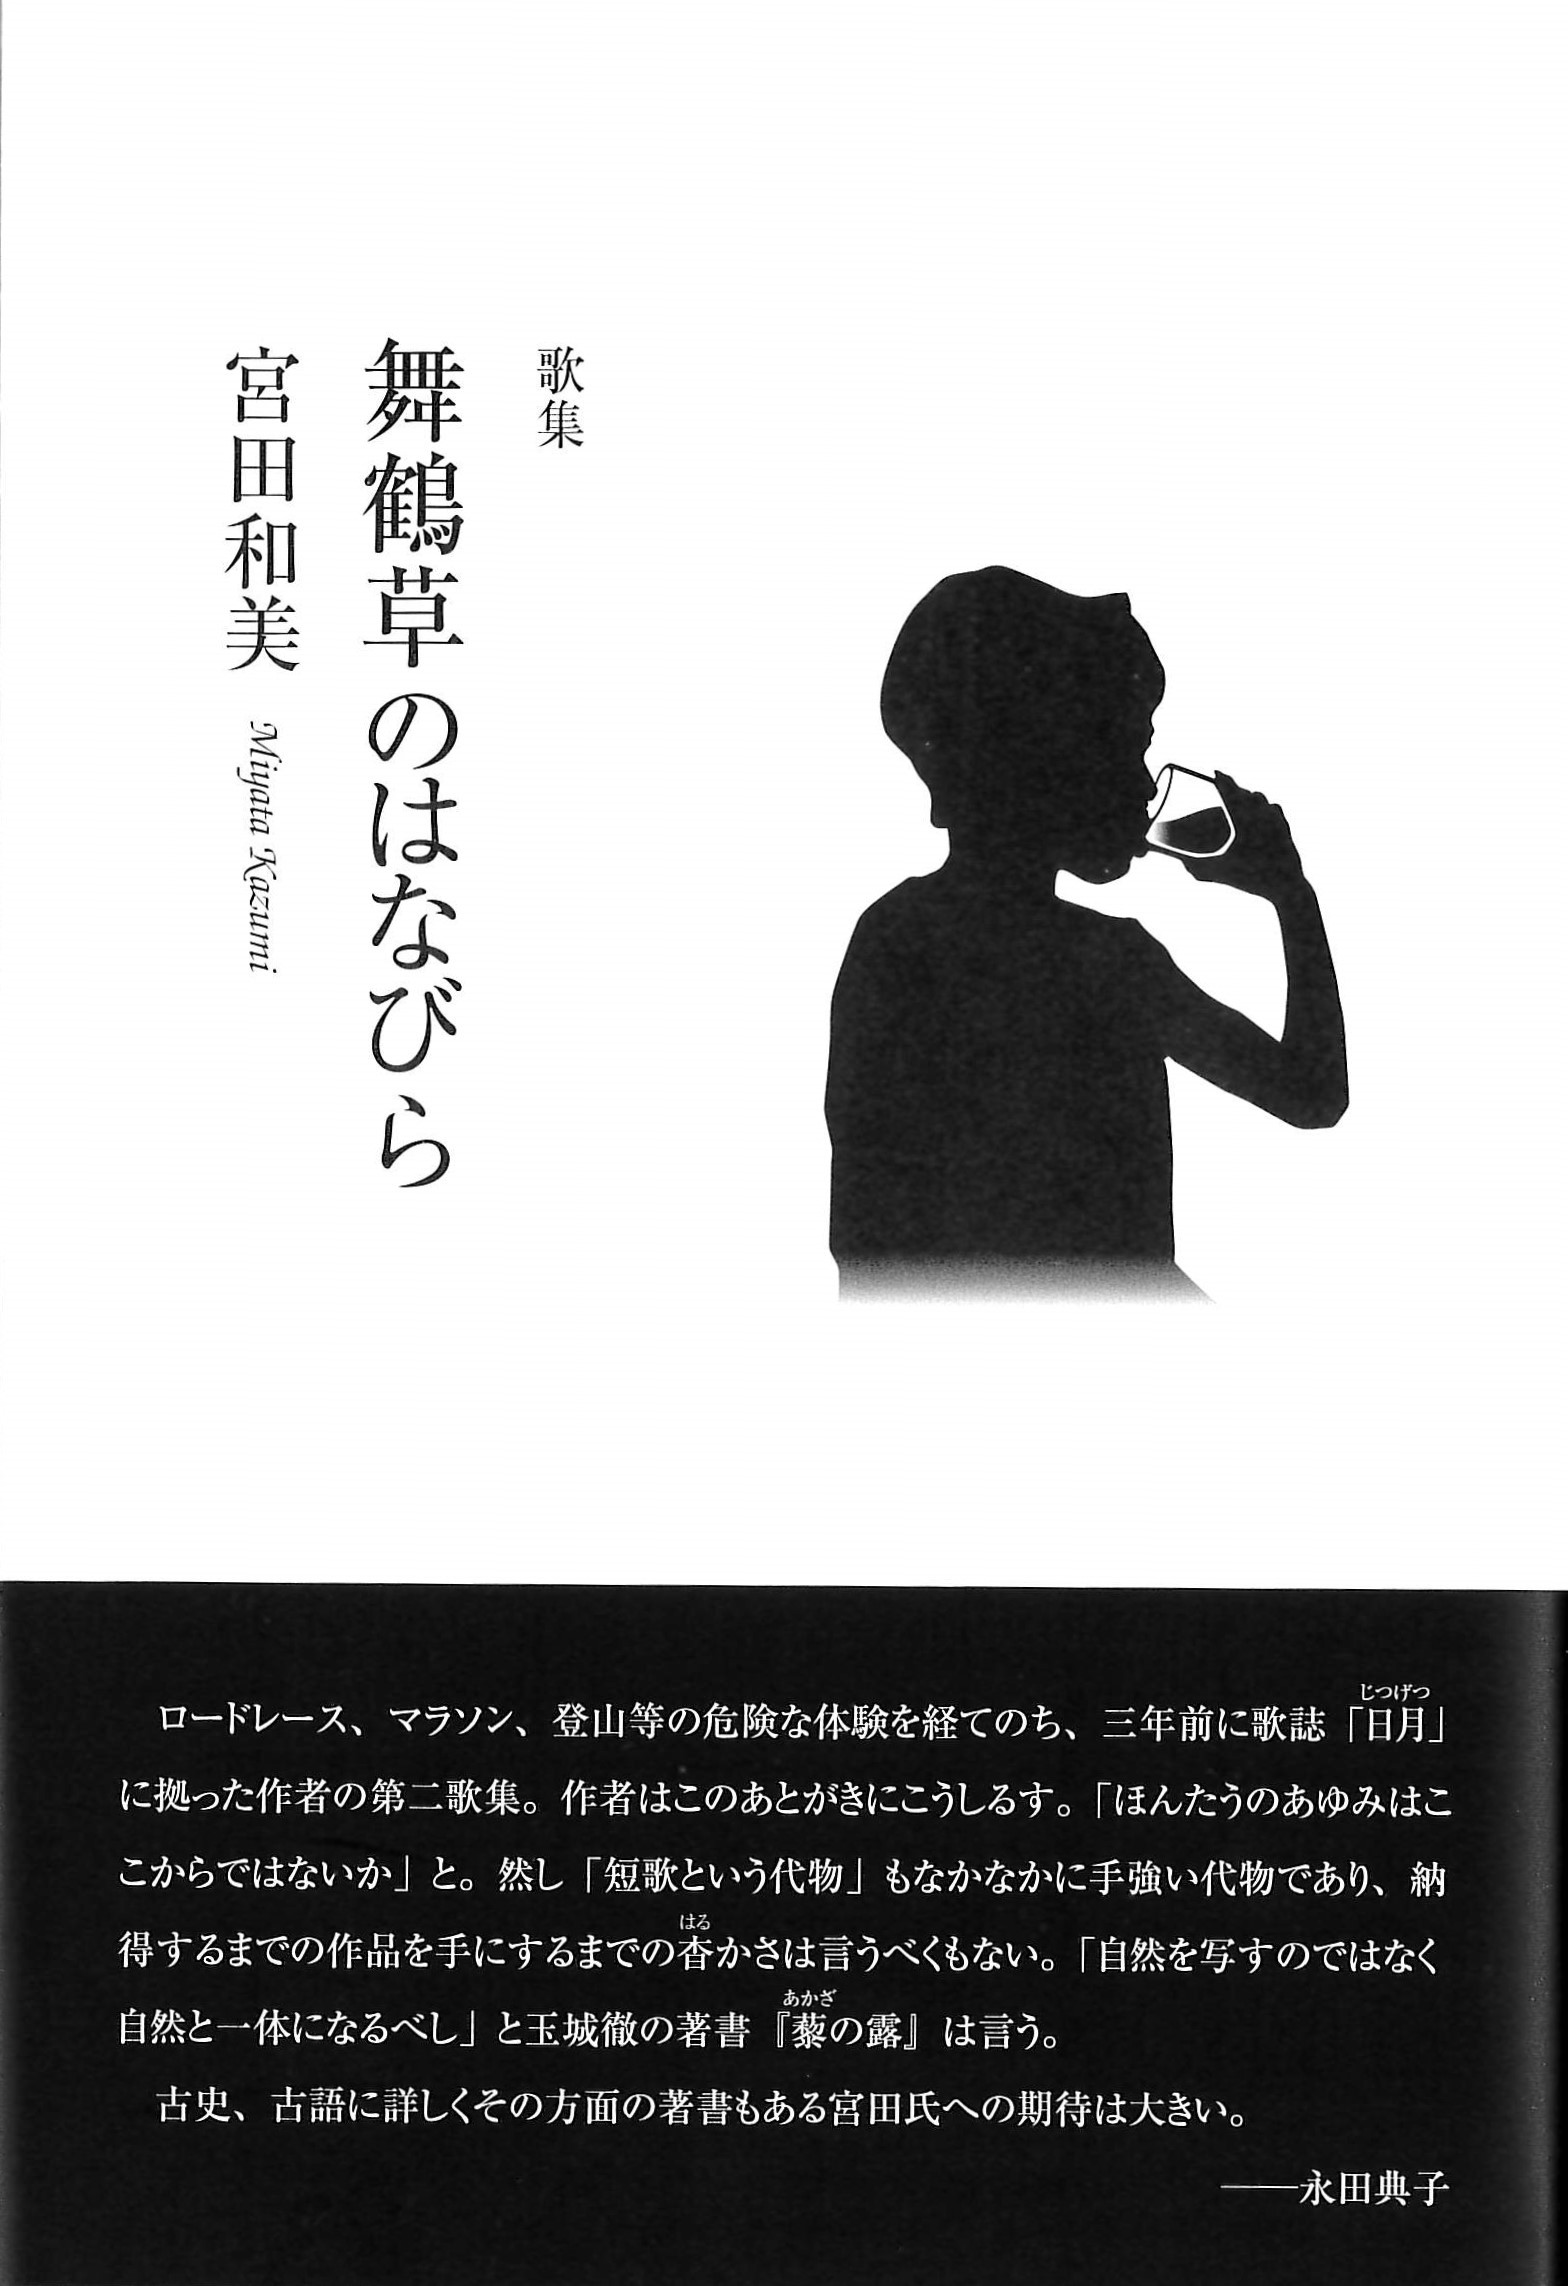 宮田和美歌集『舞鶴草のはなびら』